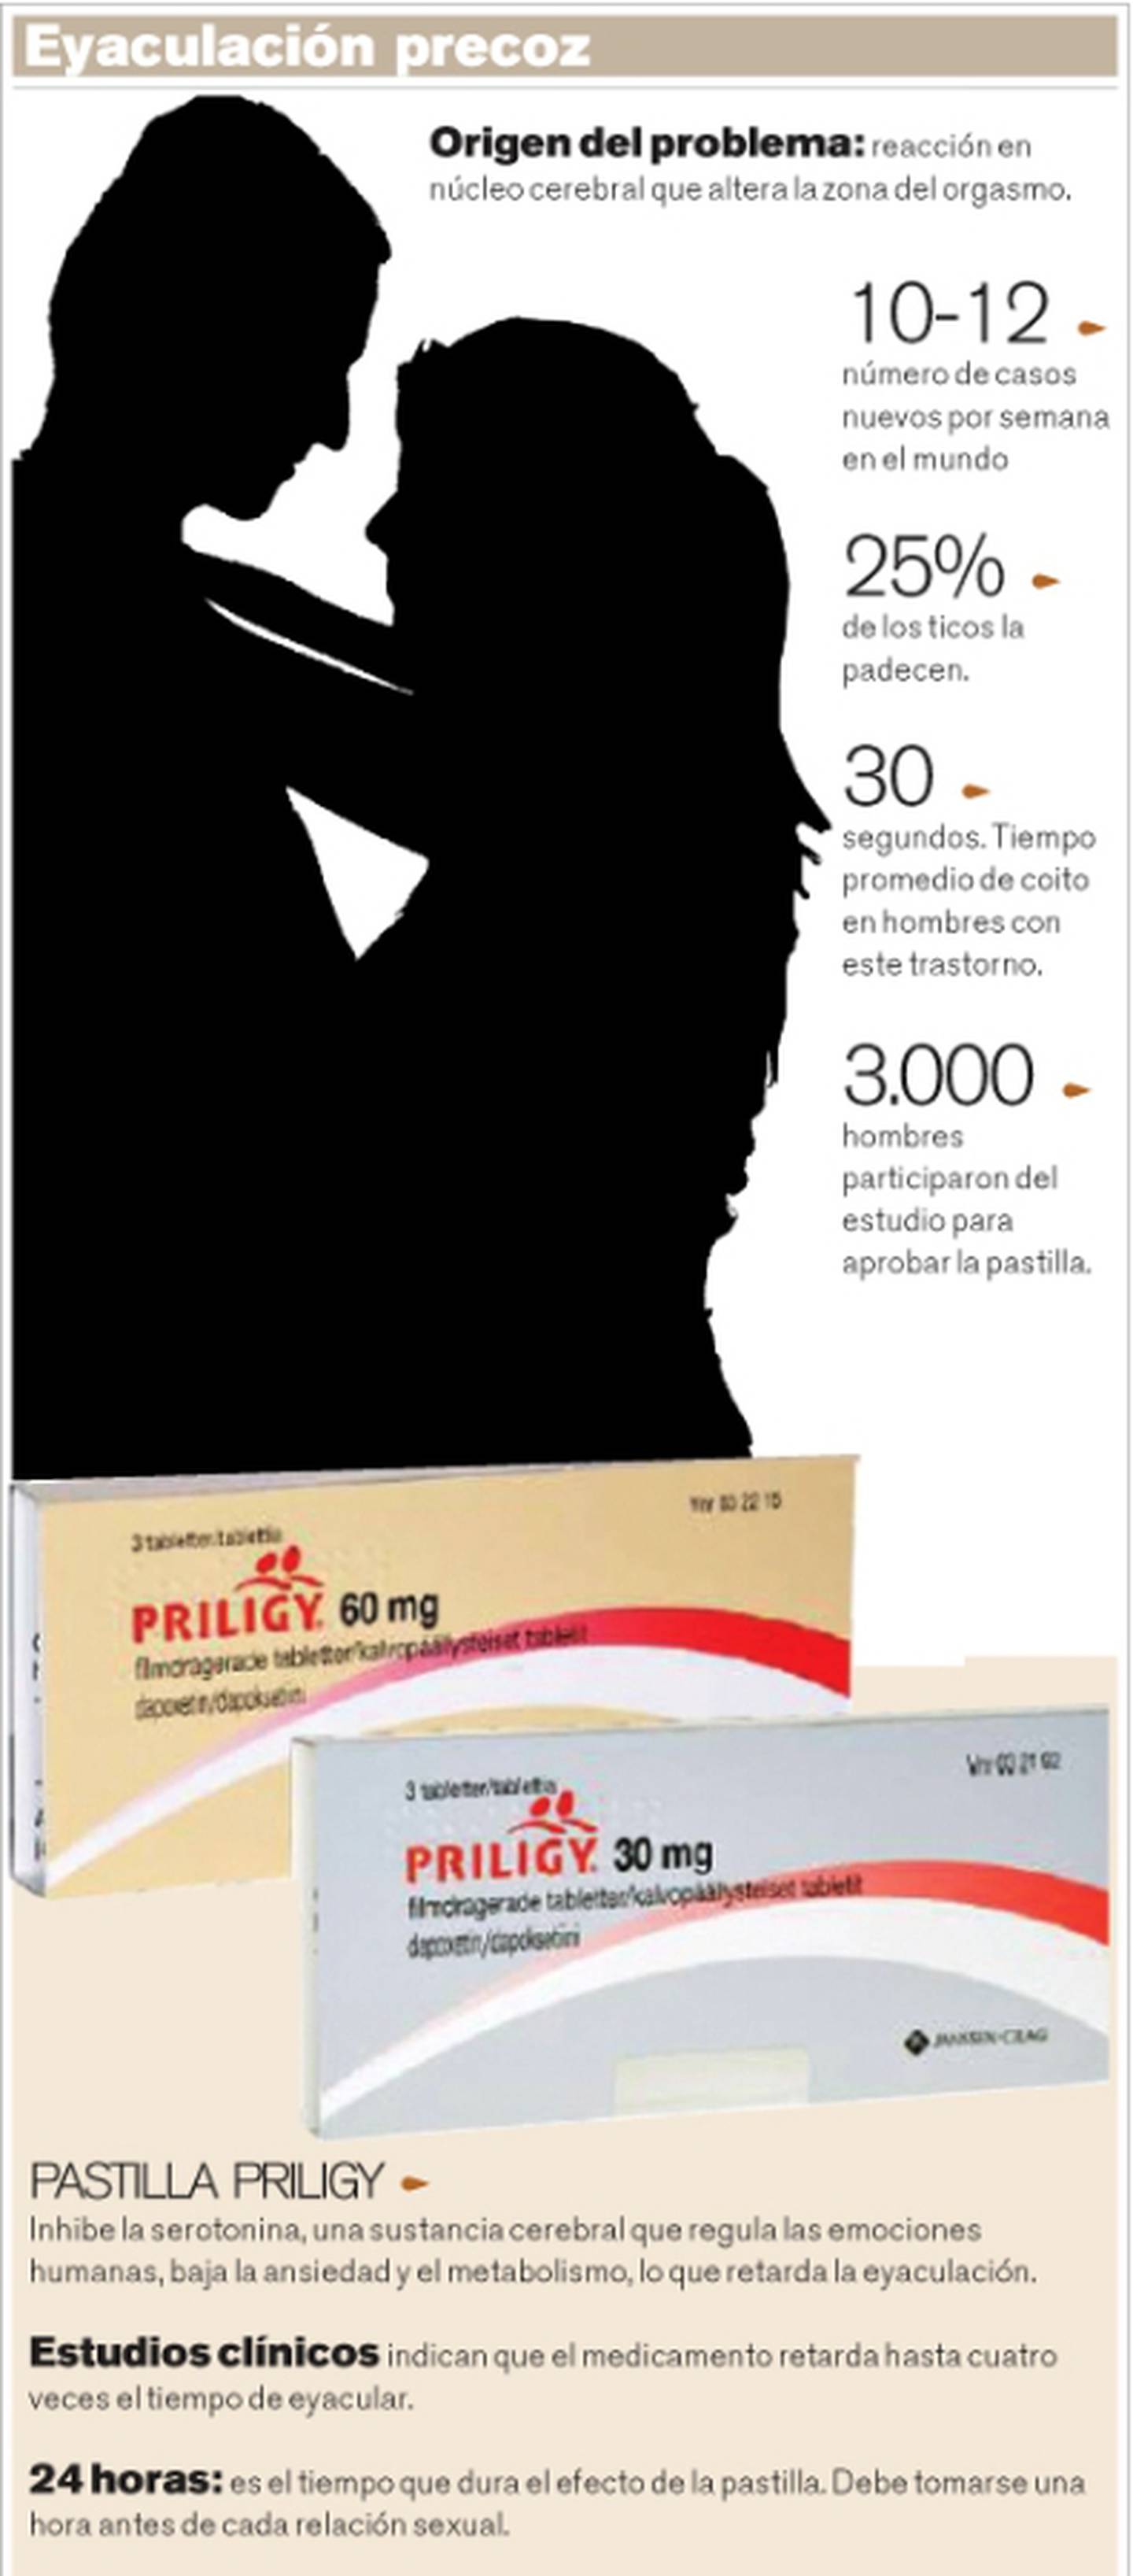 Dapoxetina: Ingrediente de la nueva pastilla que promete acabar con la  eyaculación precoz | La Nación